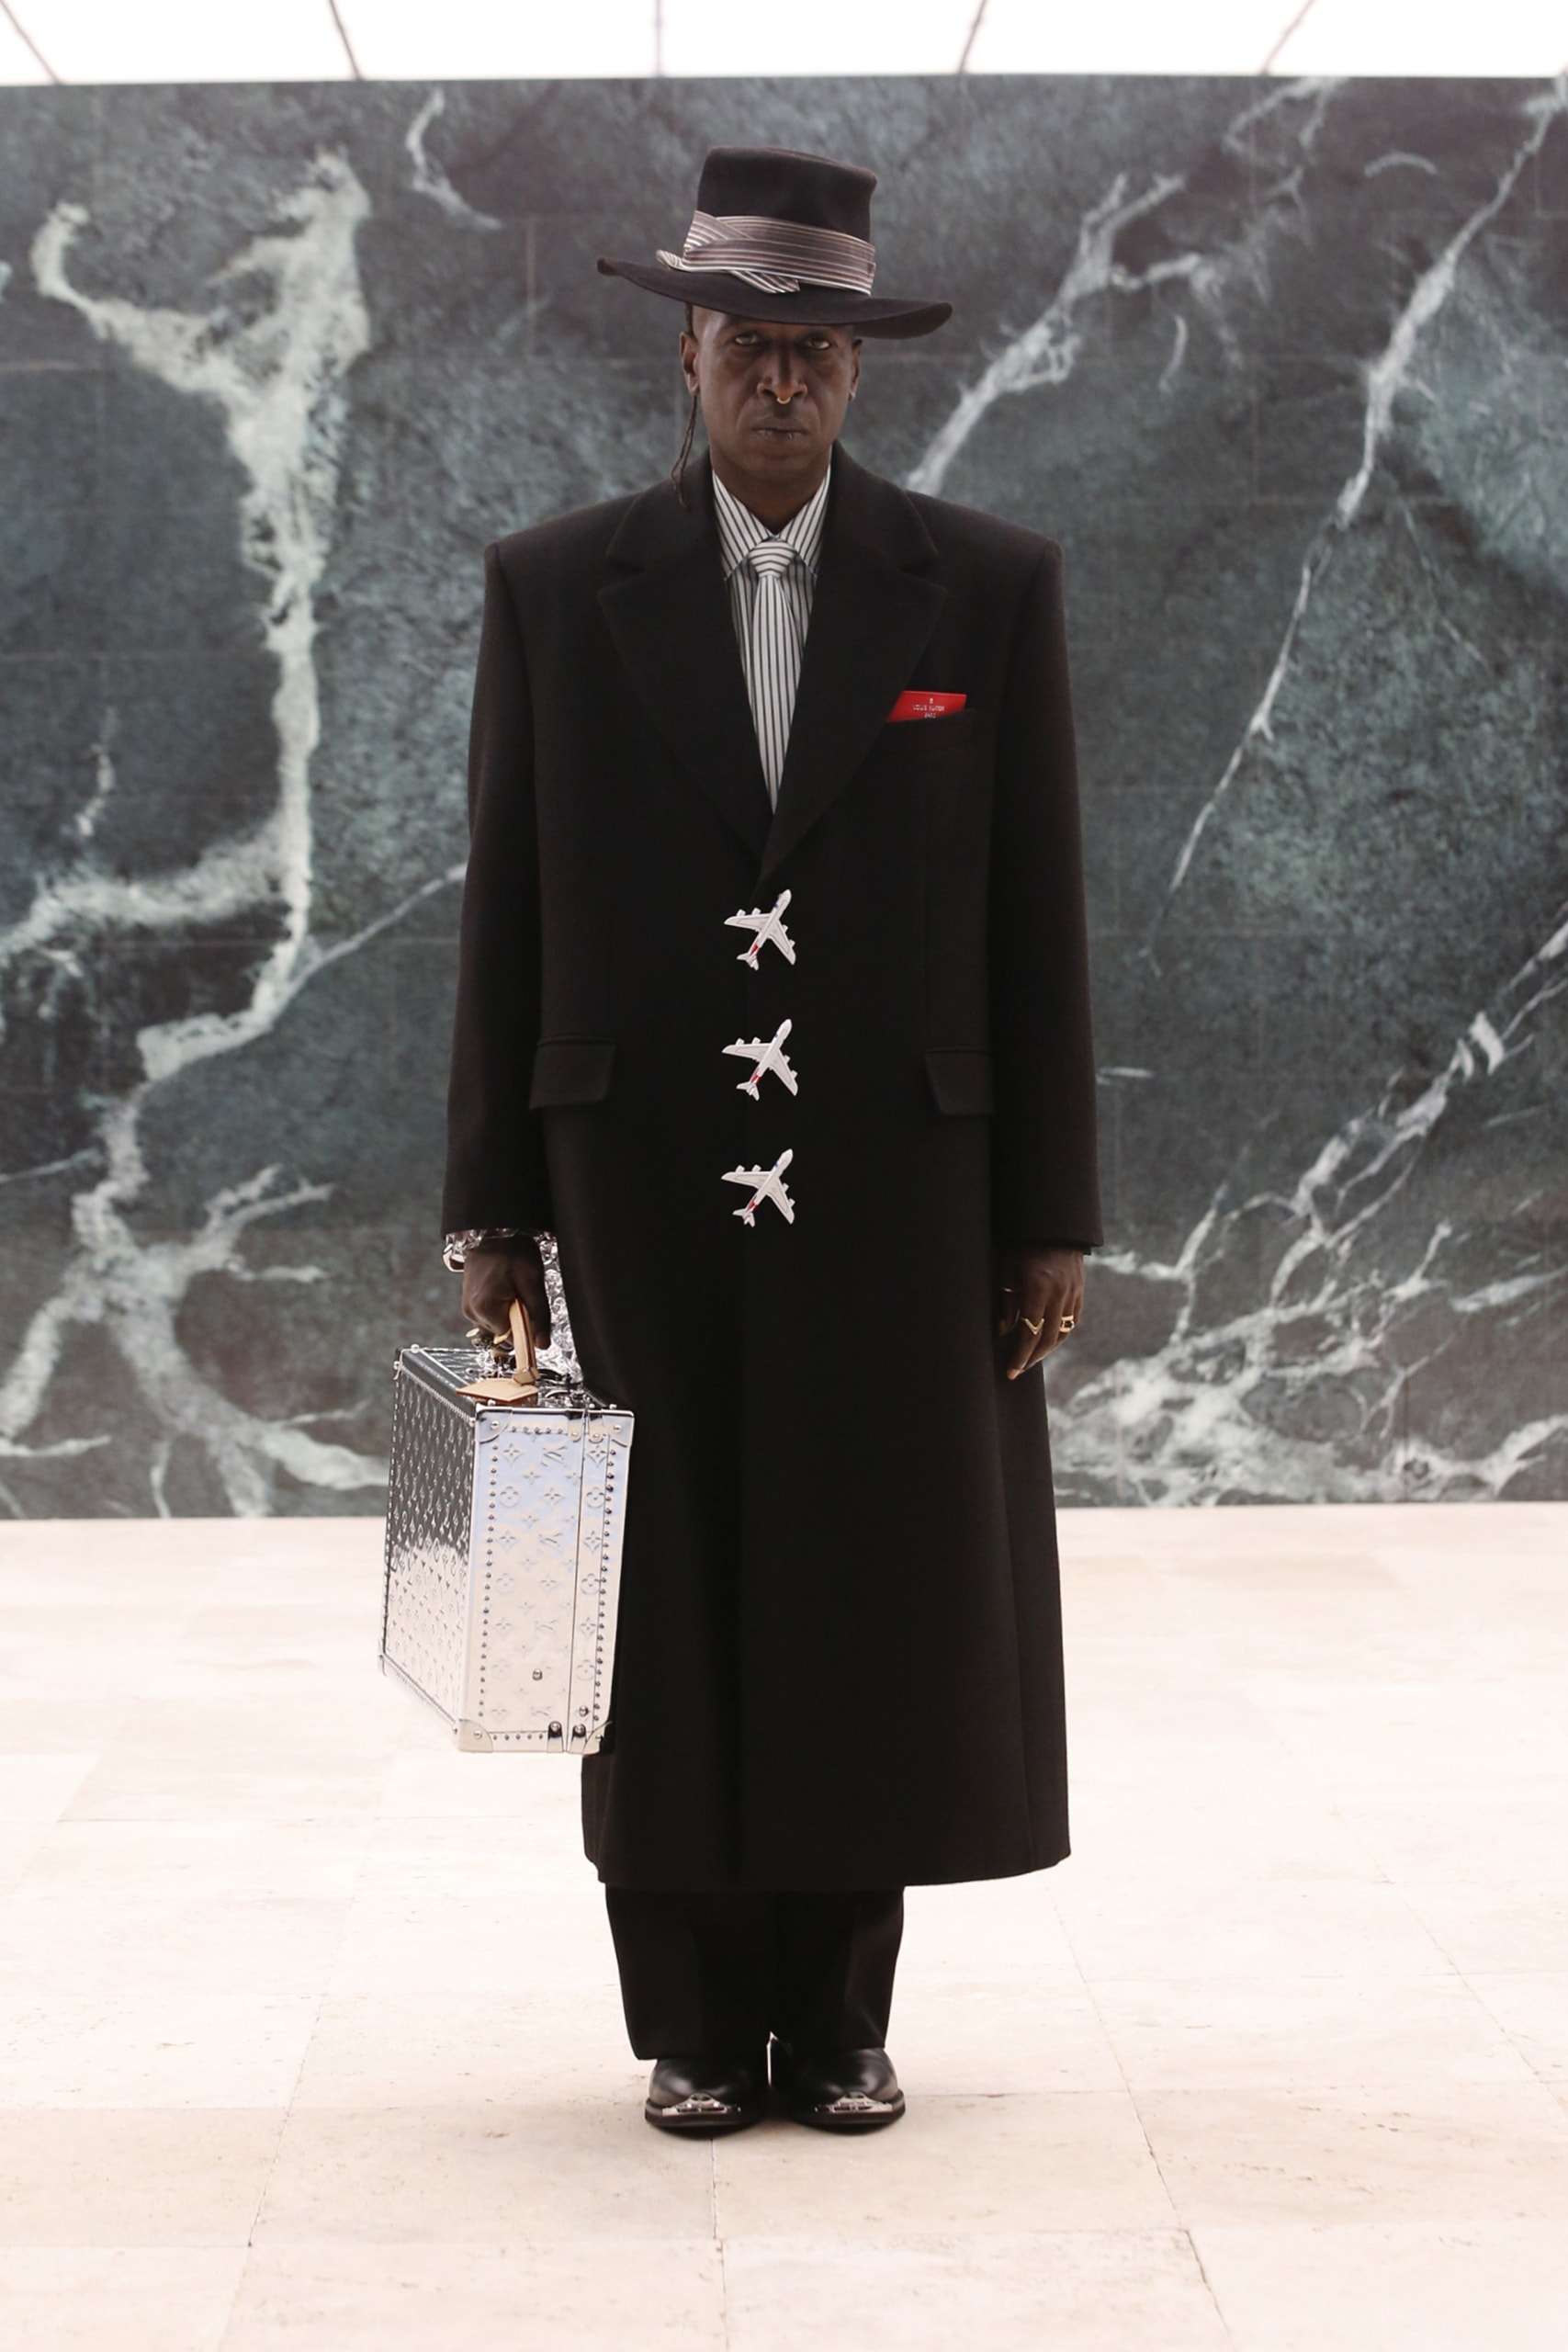 Virgil Abloh's SS21 collection for Louis Vuitton has set sail